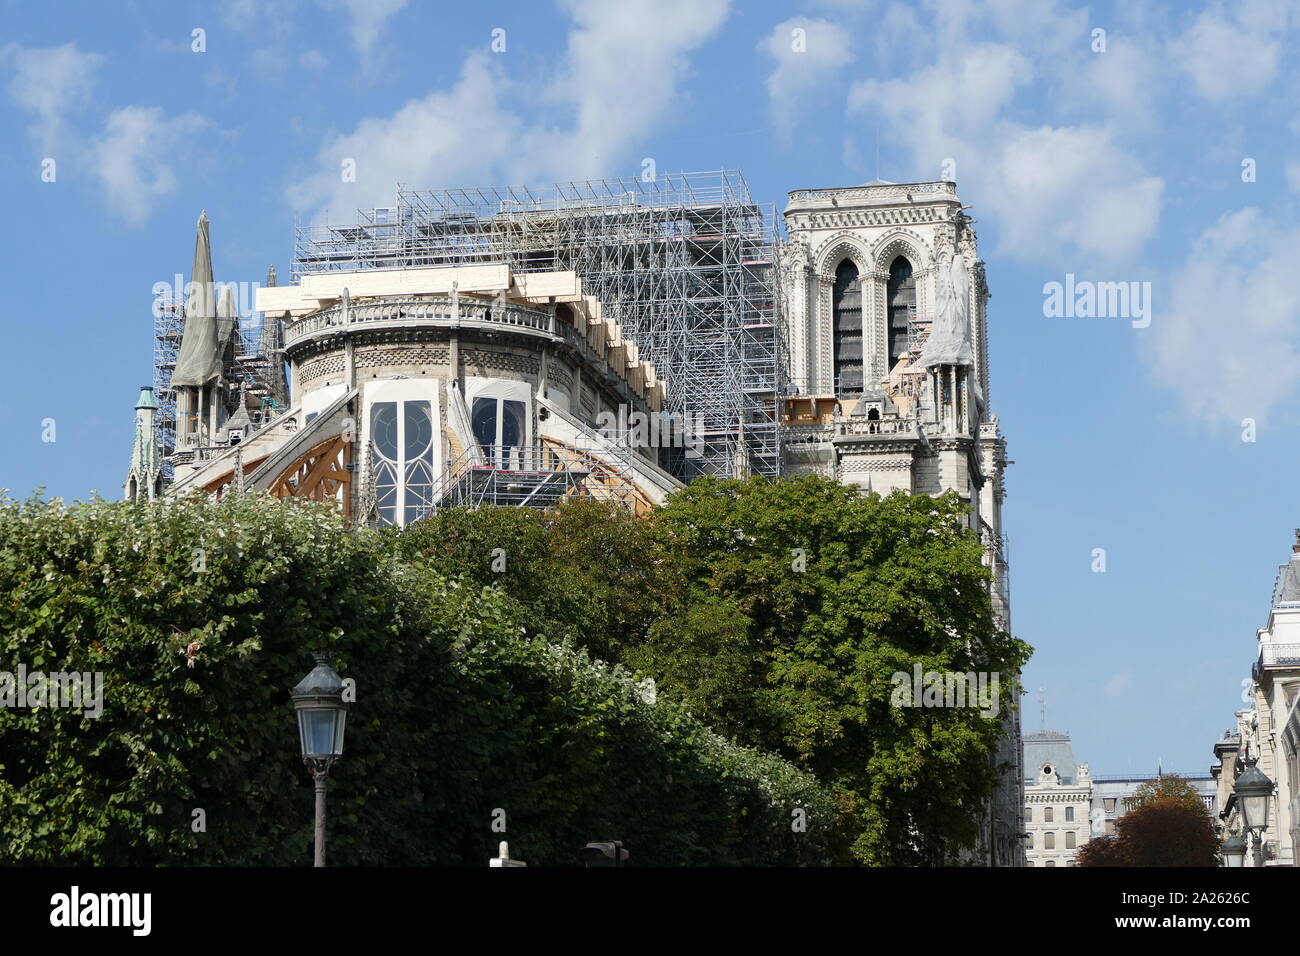 Notre-Dame de Paris einer Renovierung und Restaurierung im September 2019. Das Dach von Notre-Dame fing Feuer am Abend des 15. April 2019. Brennen für rund 15 Stunden, die Kathedrale anhaltende schwere Schäden. Am 16. Juli 2019, das Französische Parlament ein Gesetz verabschiedet, dass es wieder genau so, wie er vor dem Feuer erschienen sein. Stockfoto